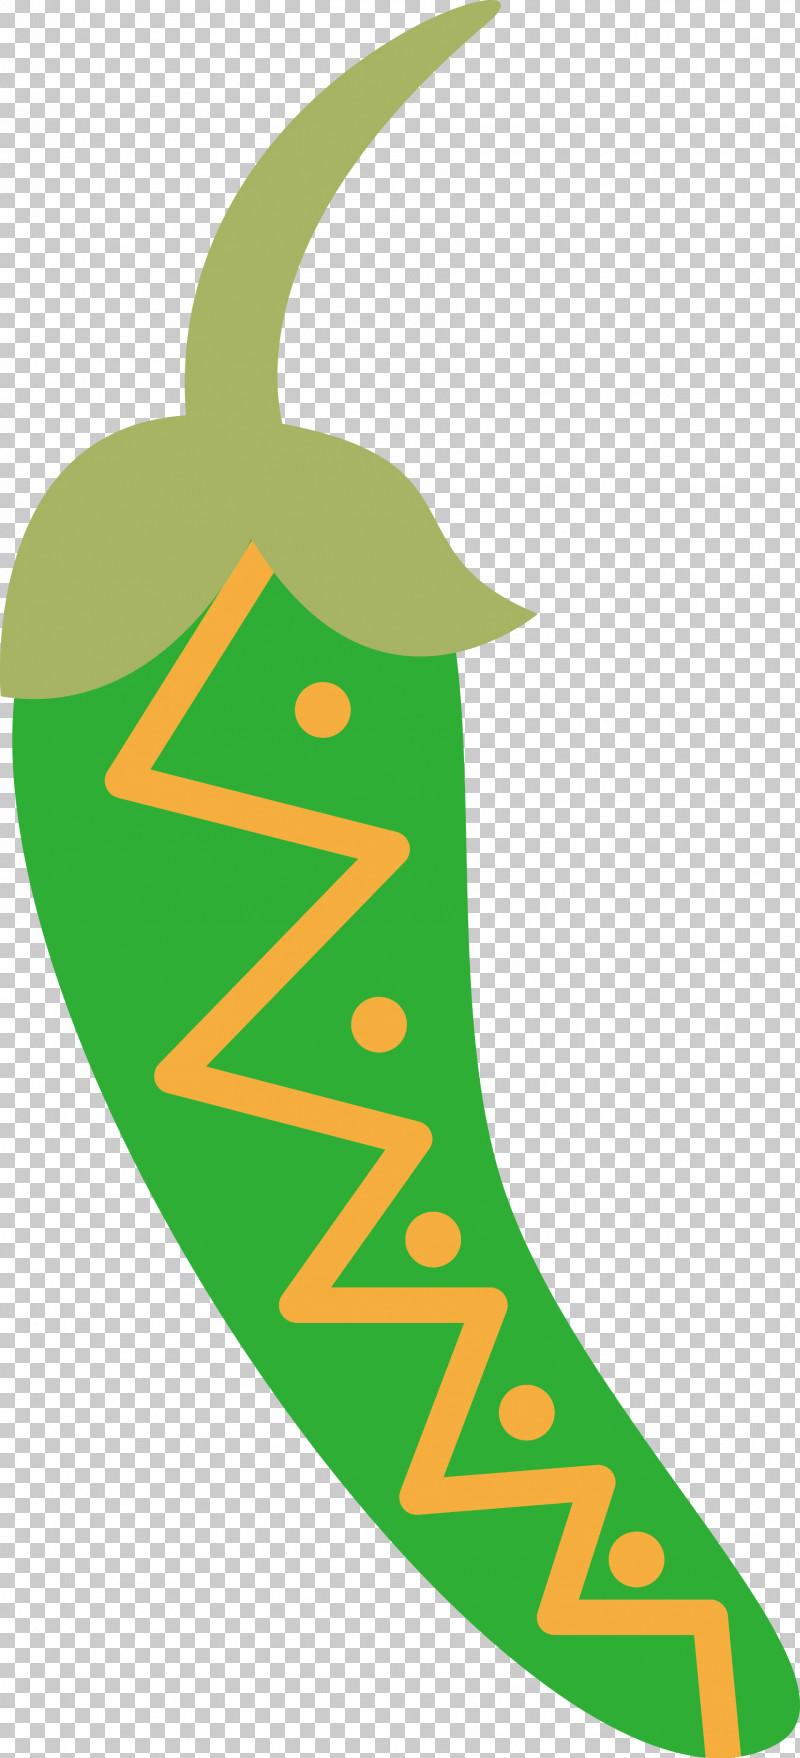 Leaf Logo Green M-tree Line PNG, Clipart, Area, Green, Leaf, Line, Logo Free PNG Download